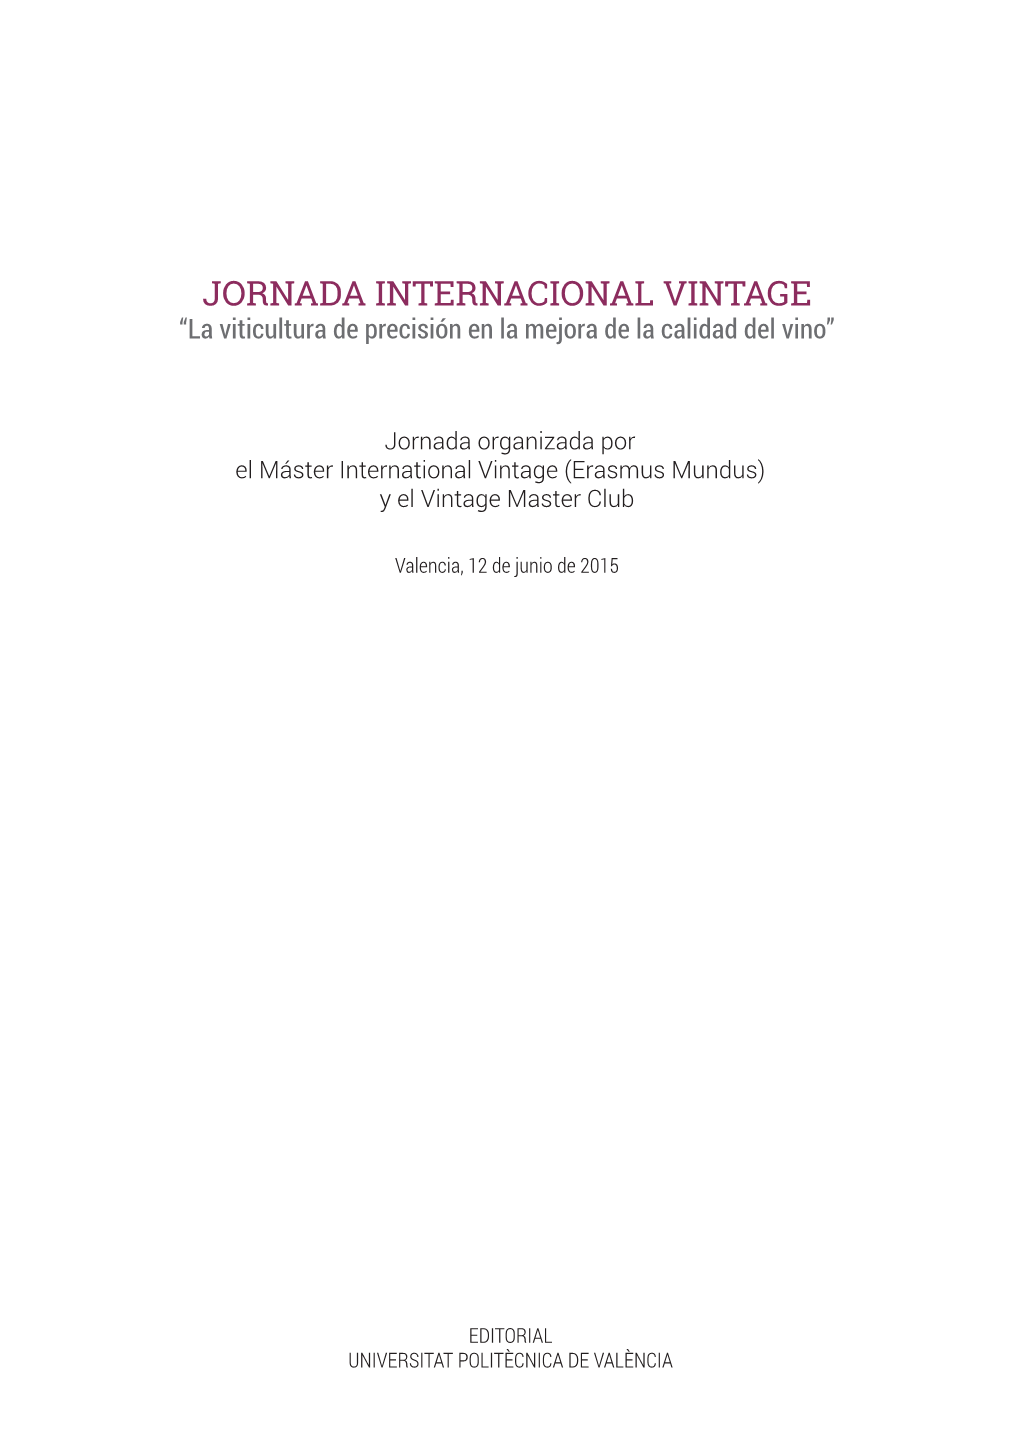 JORNADA INTERNACIONAL VINTAGE “La Viticultura De Precisión En La Mejora De La Calidad Del Vino”